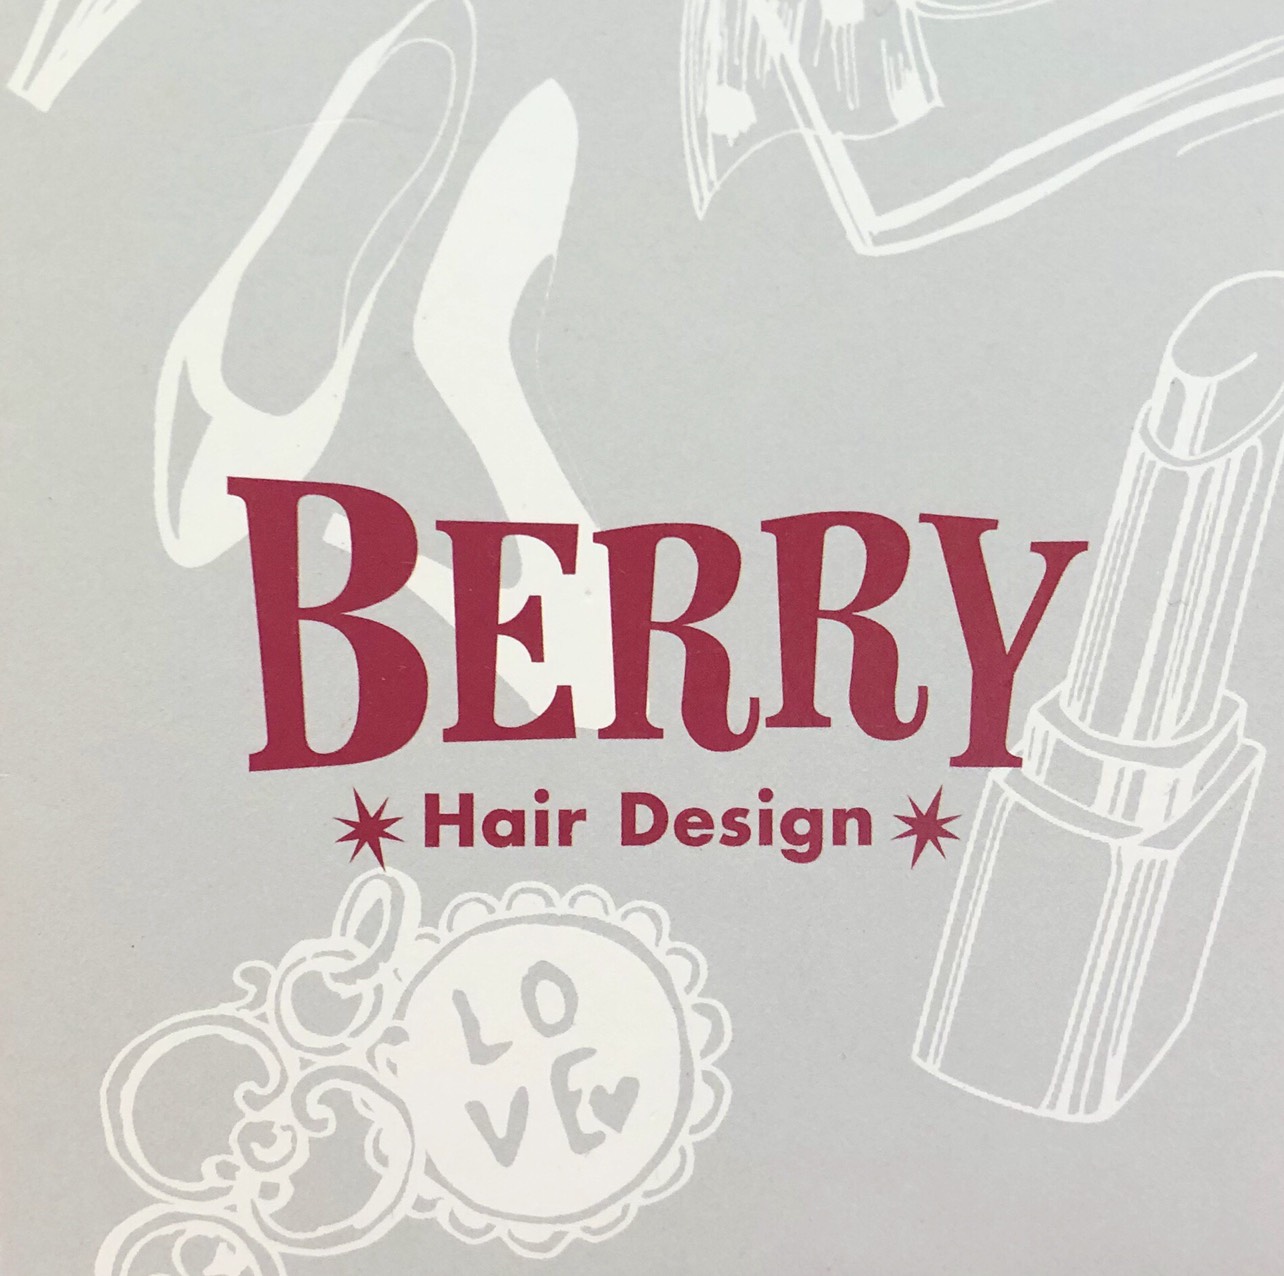 HairDesign BERRY